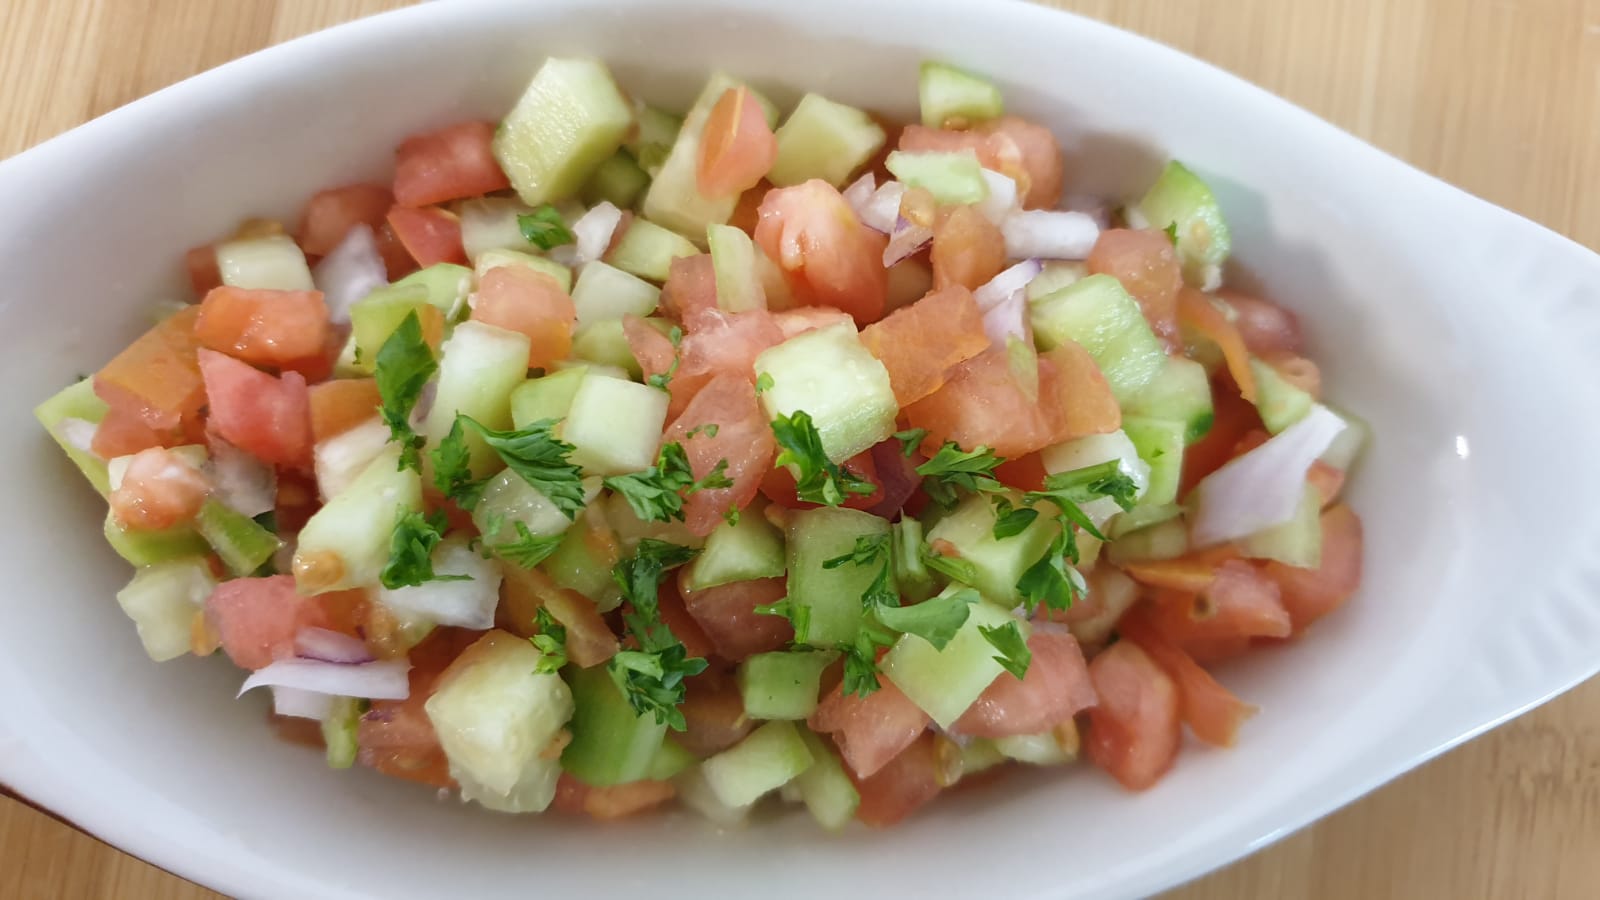 Israeli Salad (small) – $5.99